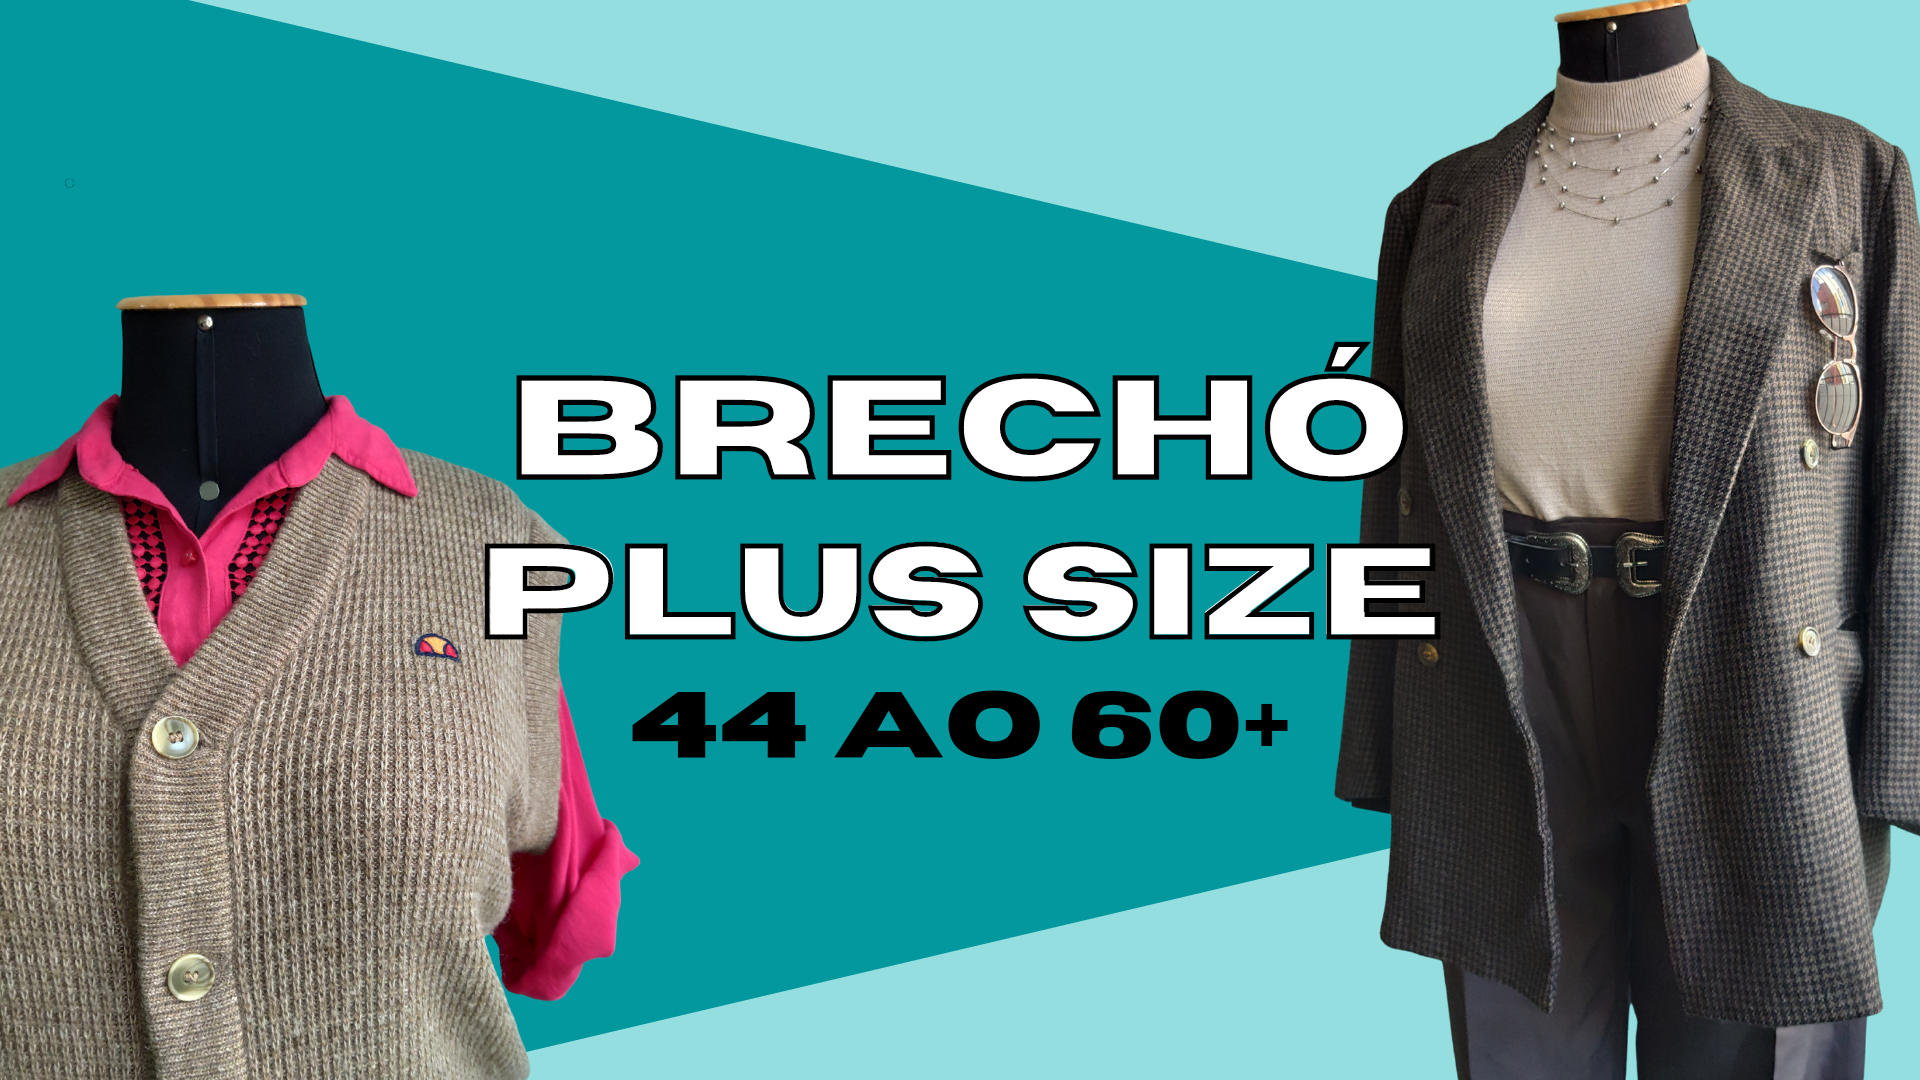 Brechó Plus size do 44 ao 60+